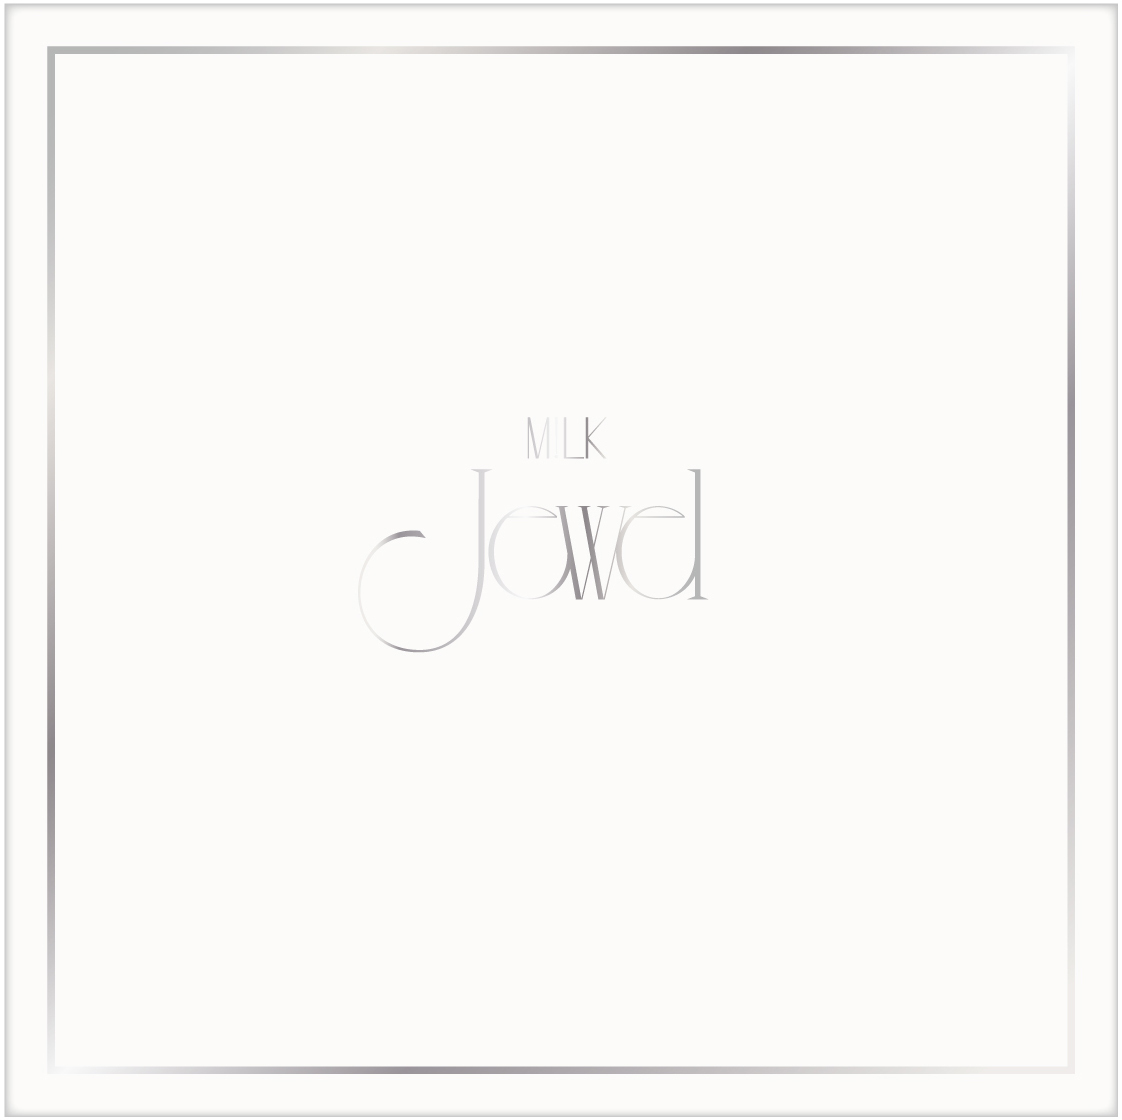 4/15更新】M!LK 6月14日(水)リリース メジャー1stアルバム「Jewel 